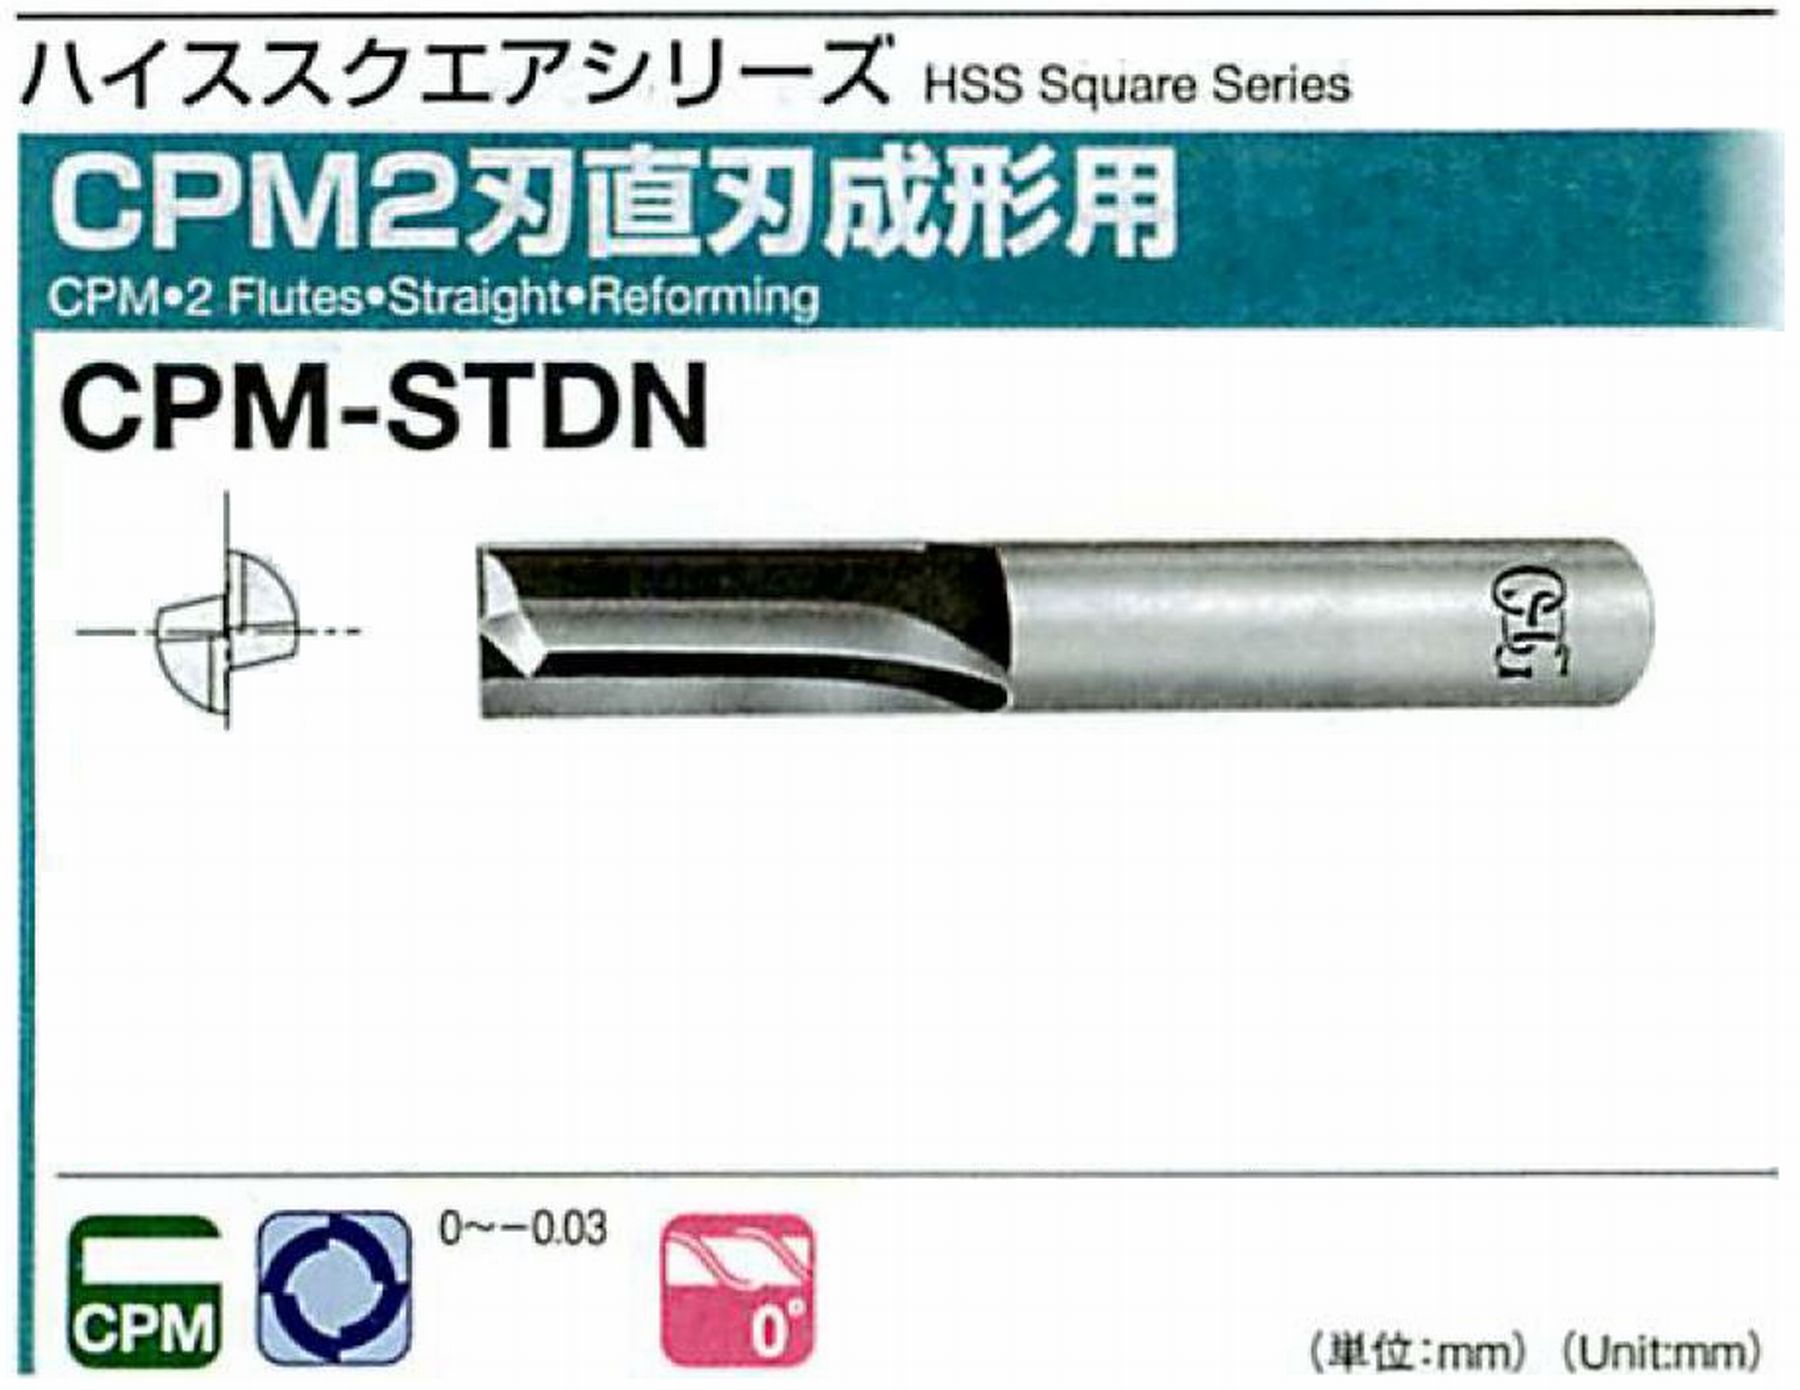 オーエスジー/OSG CPM2刃 直刃成形用 CPM-STDN 外径13 全長85 刃長35 シャンク径12mm